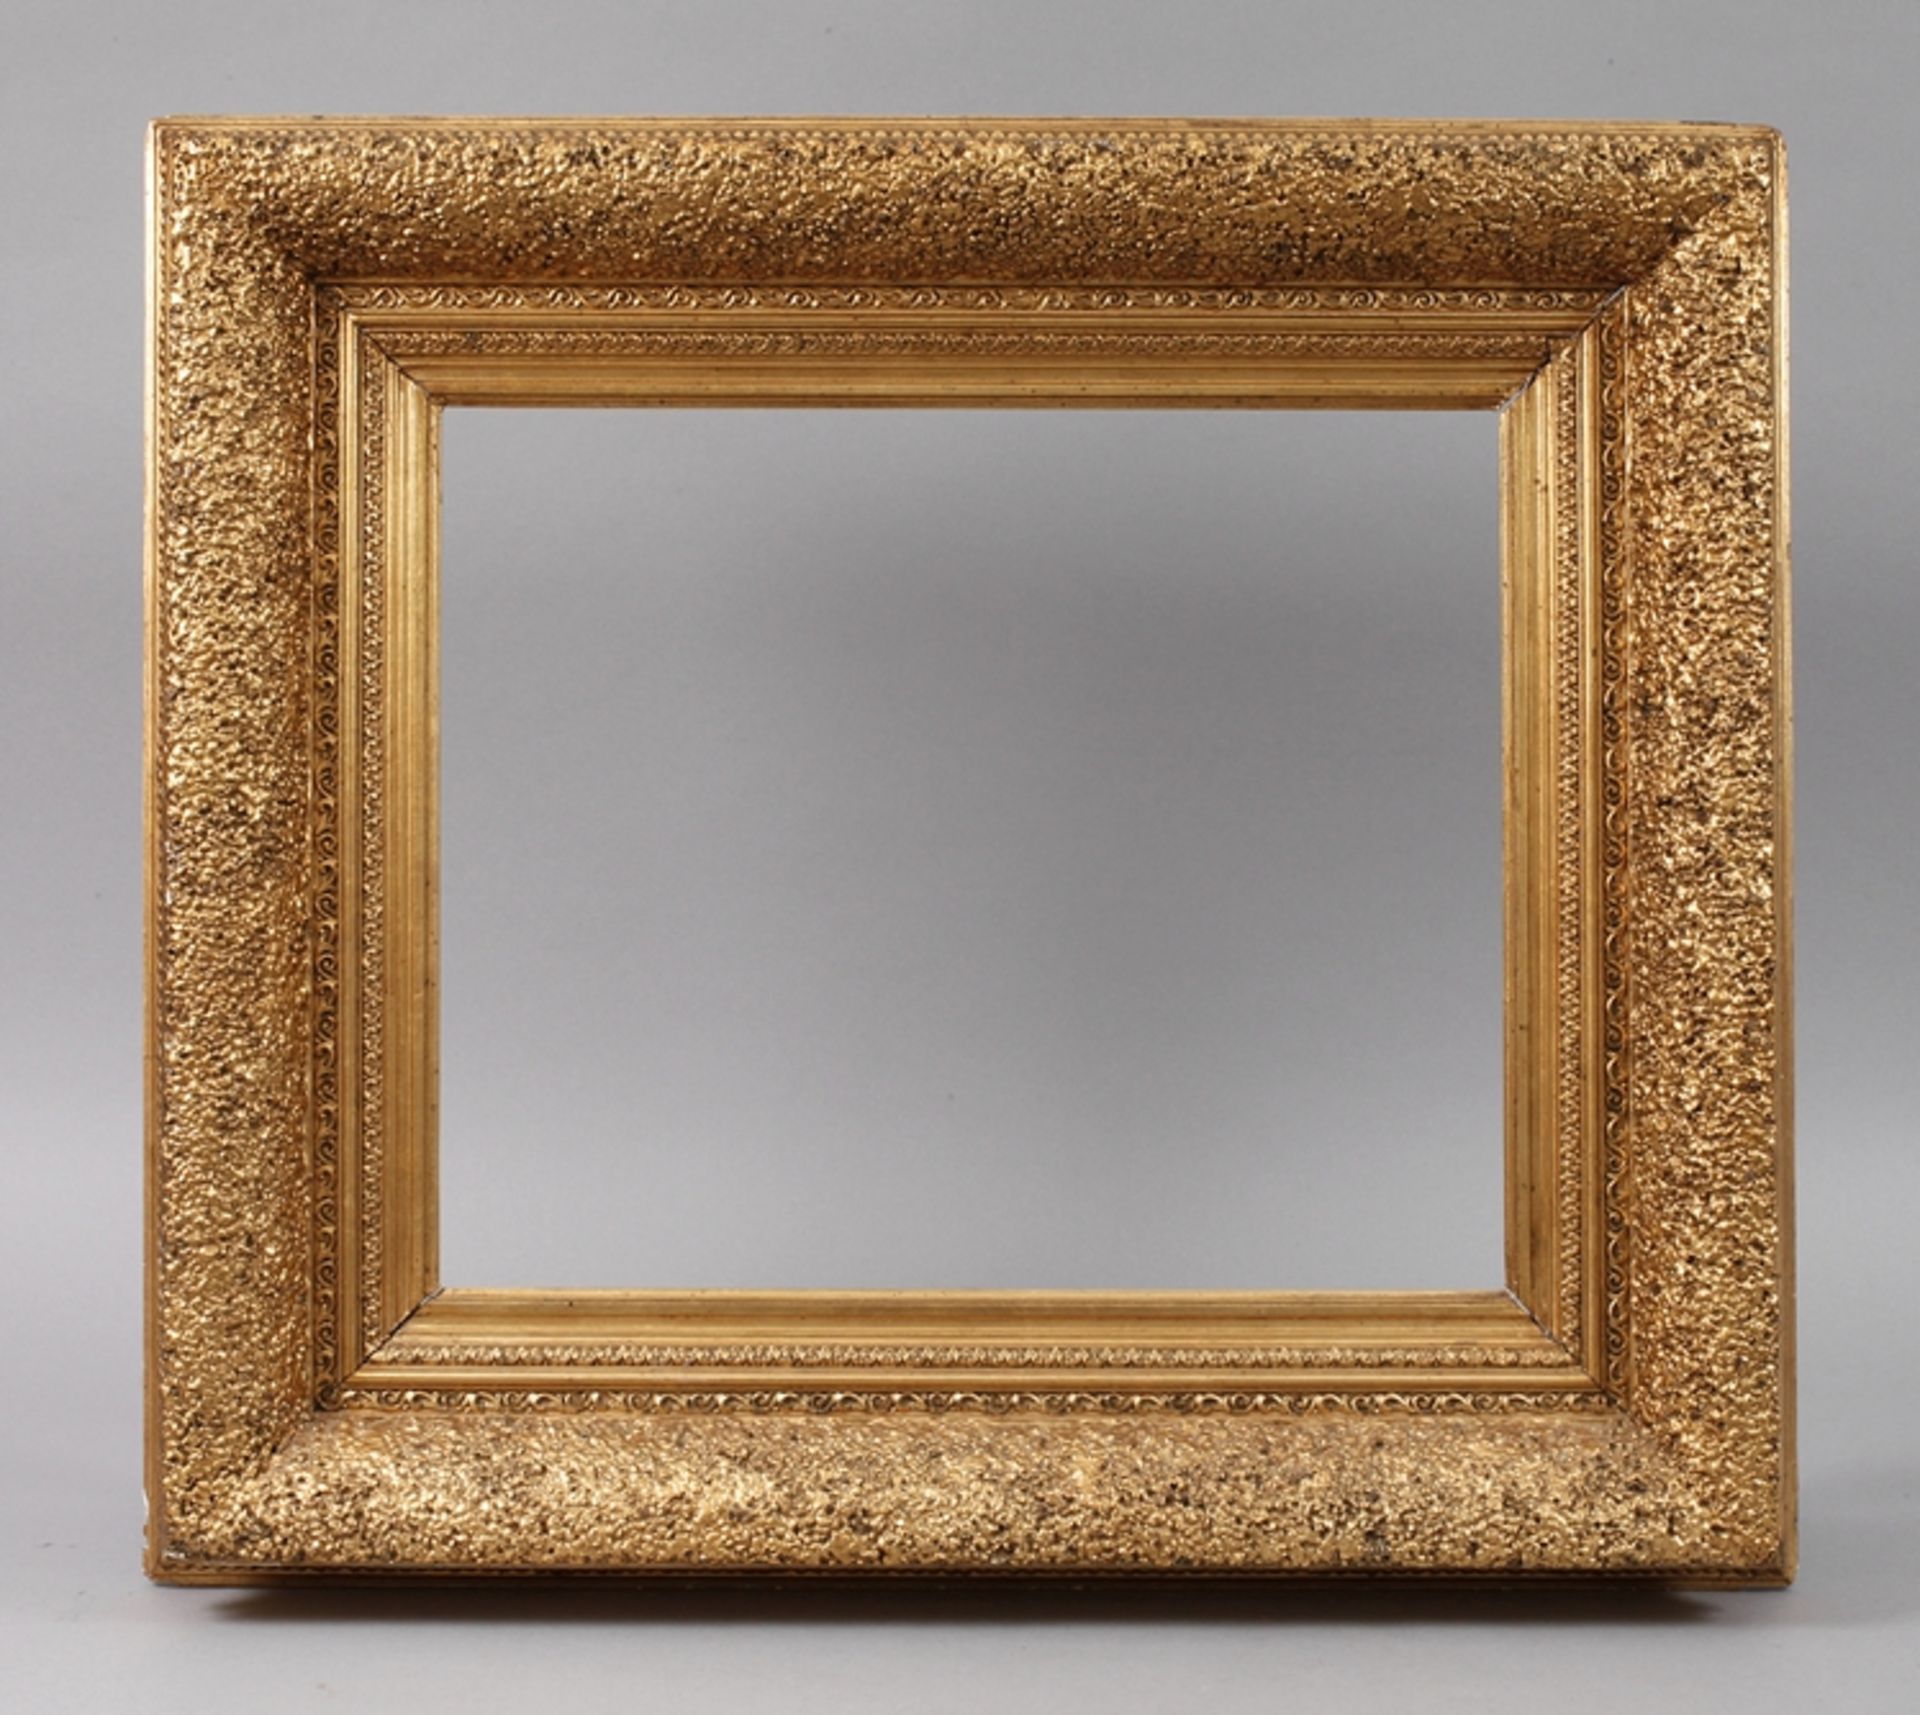 GoldstuckrahmenEnde 19. Jh., Rahmen aus ca. 15 cm breiter, stark steigend profilierter, teils mit